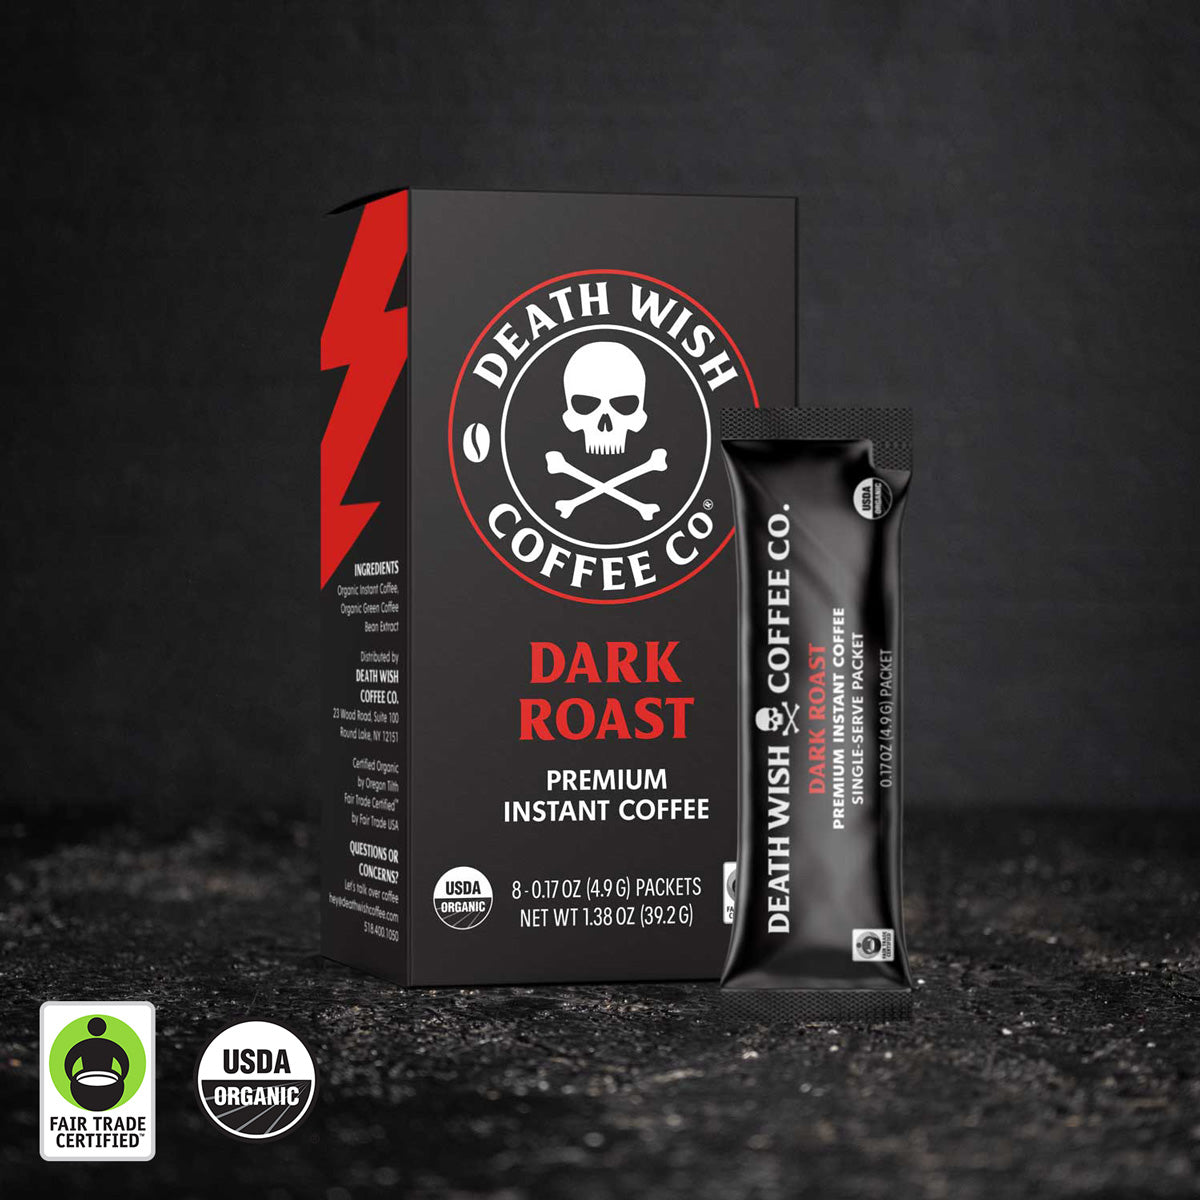 www.deathwishcoffee.com